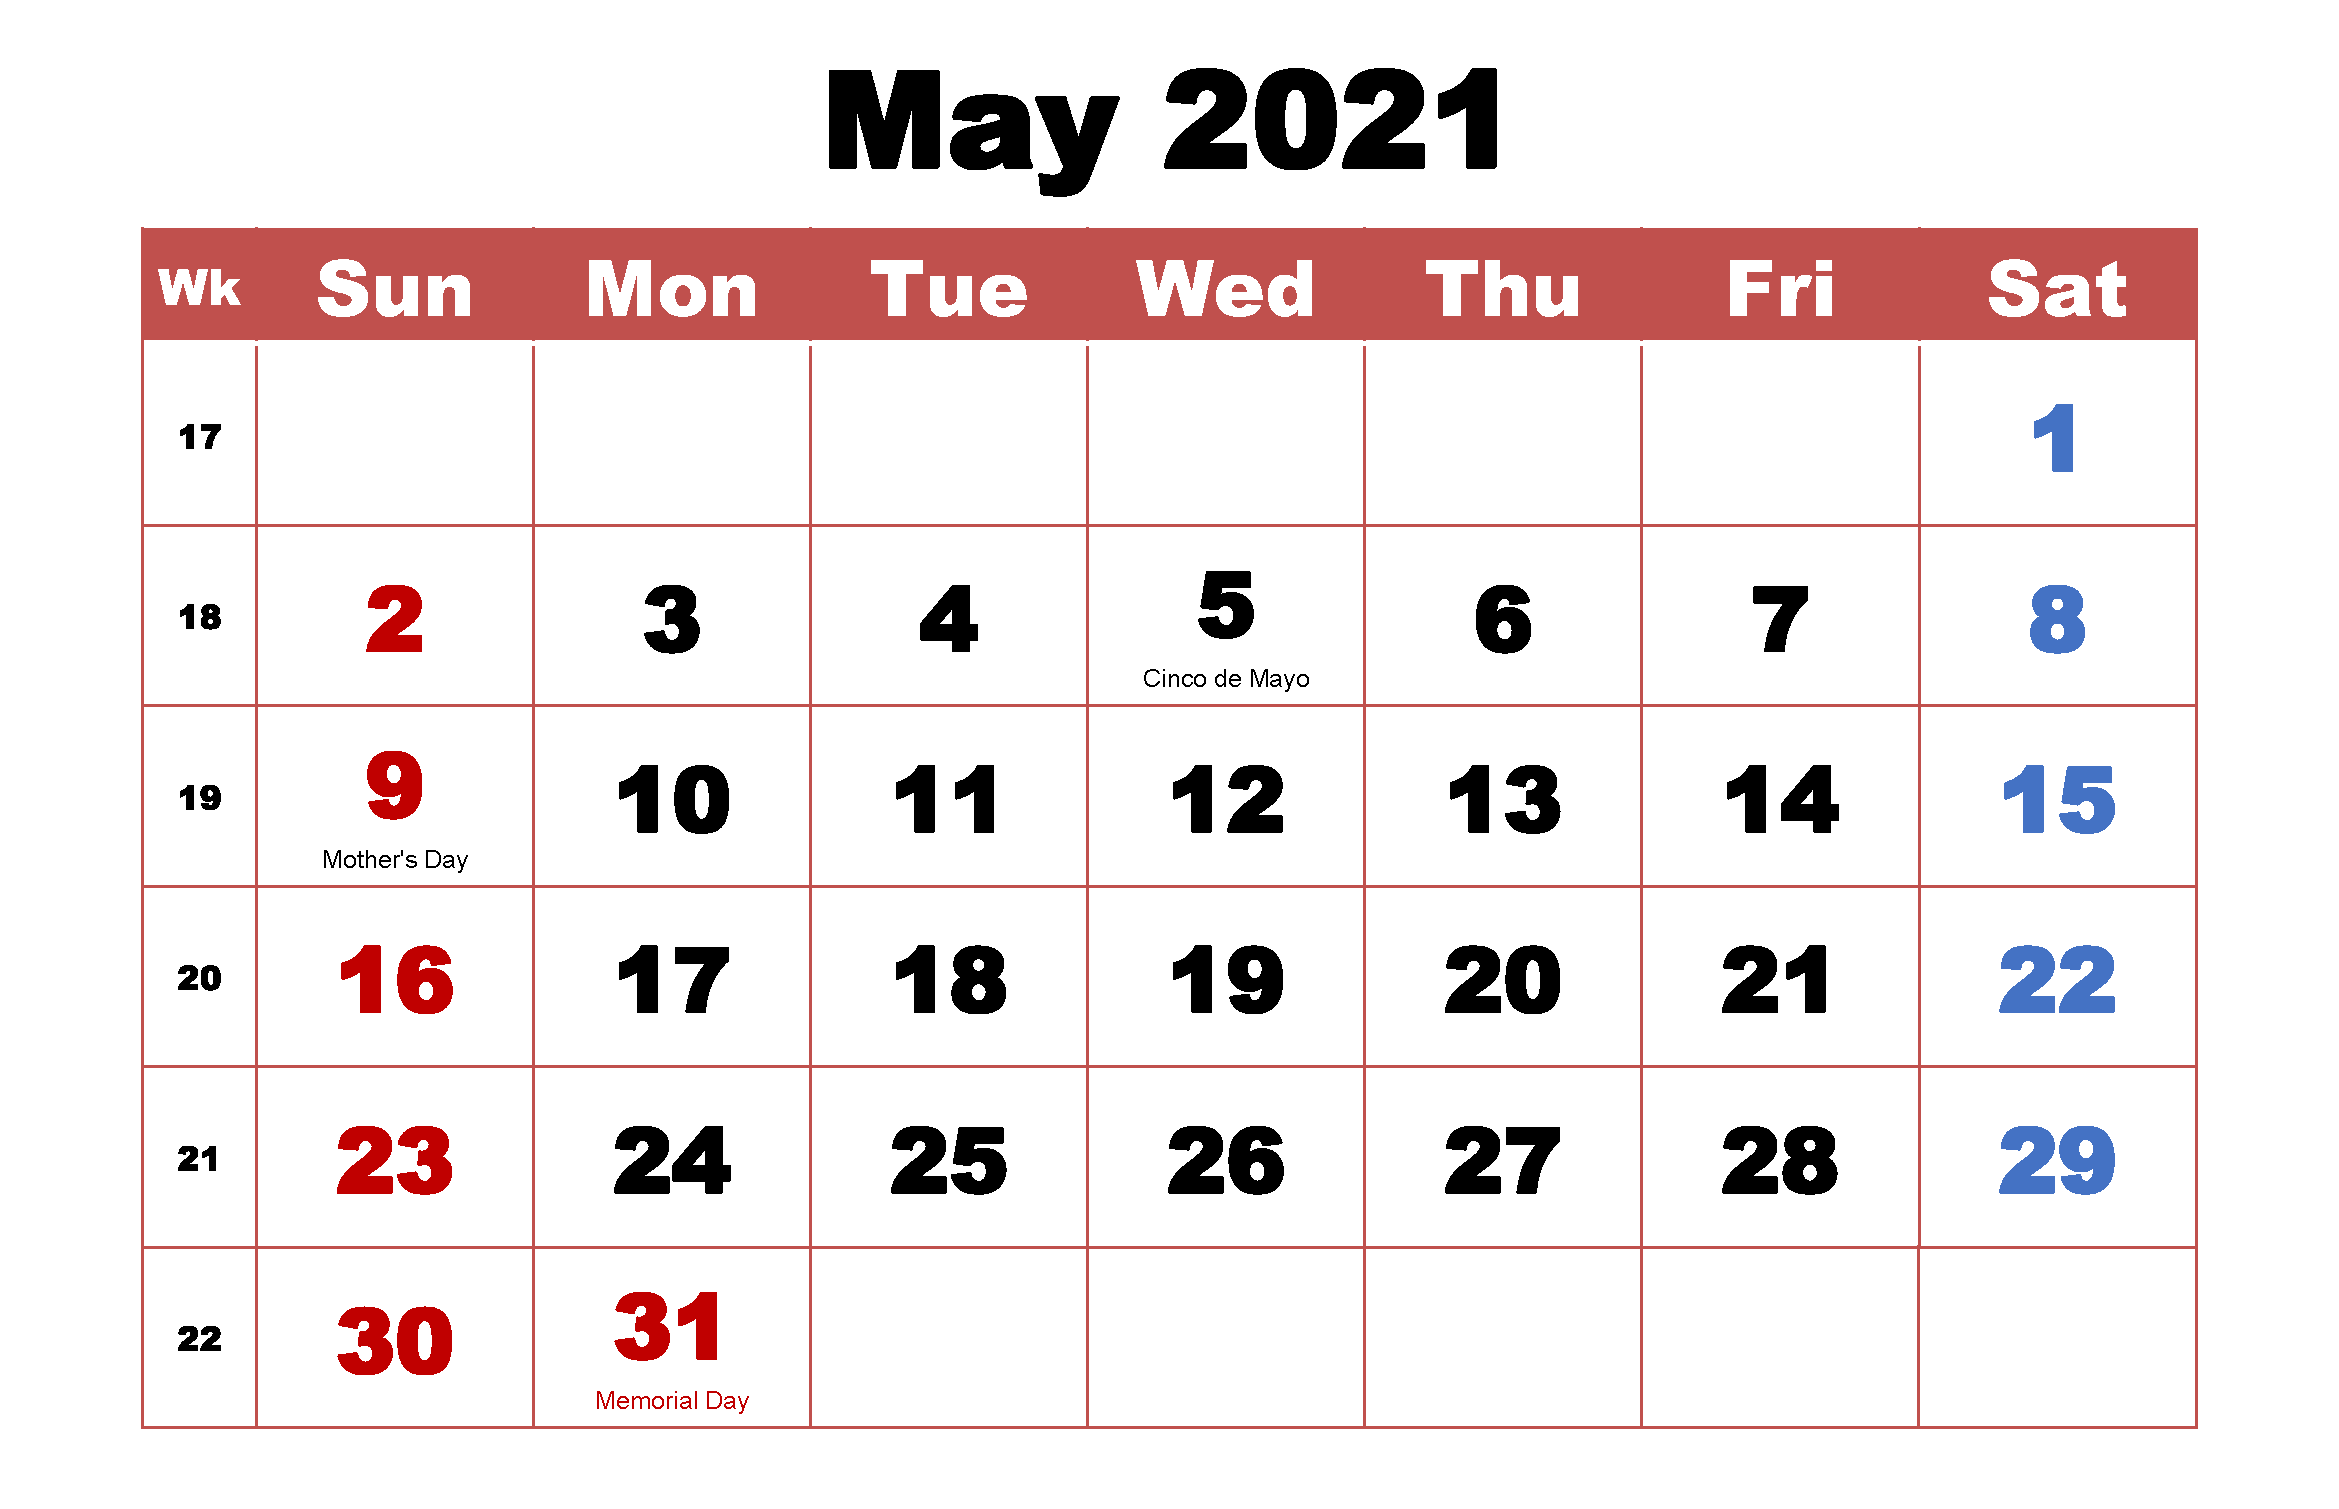 May 2021 Holidays Calendar Template